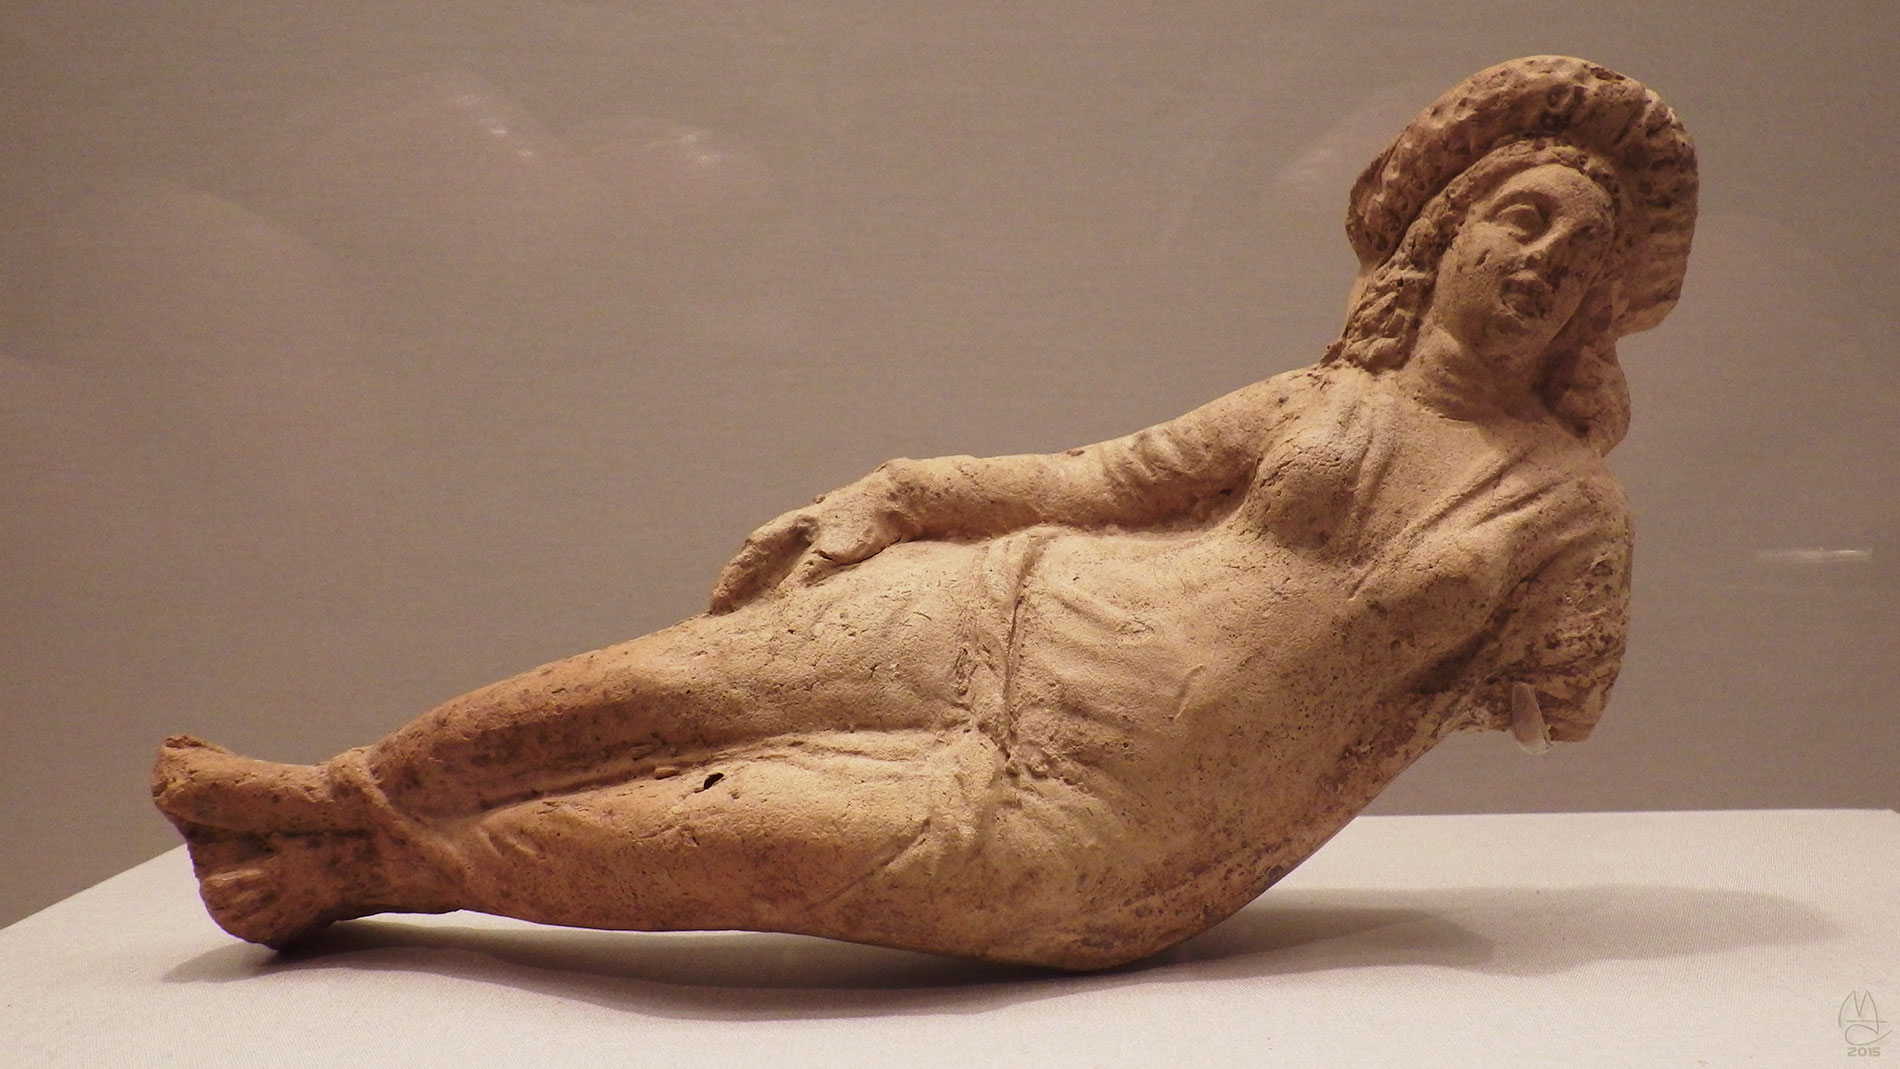 Reclining Female Figurine 150 BCE- 70 CE